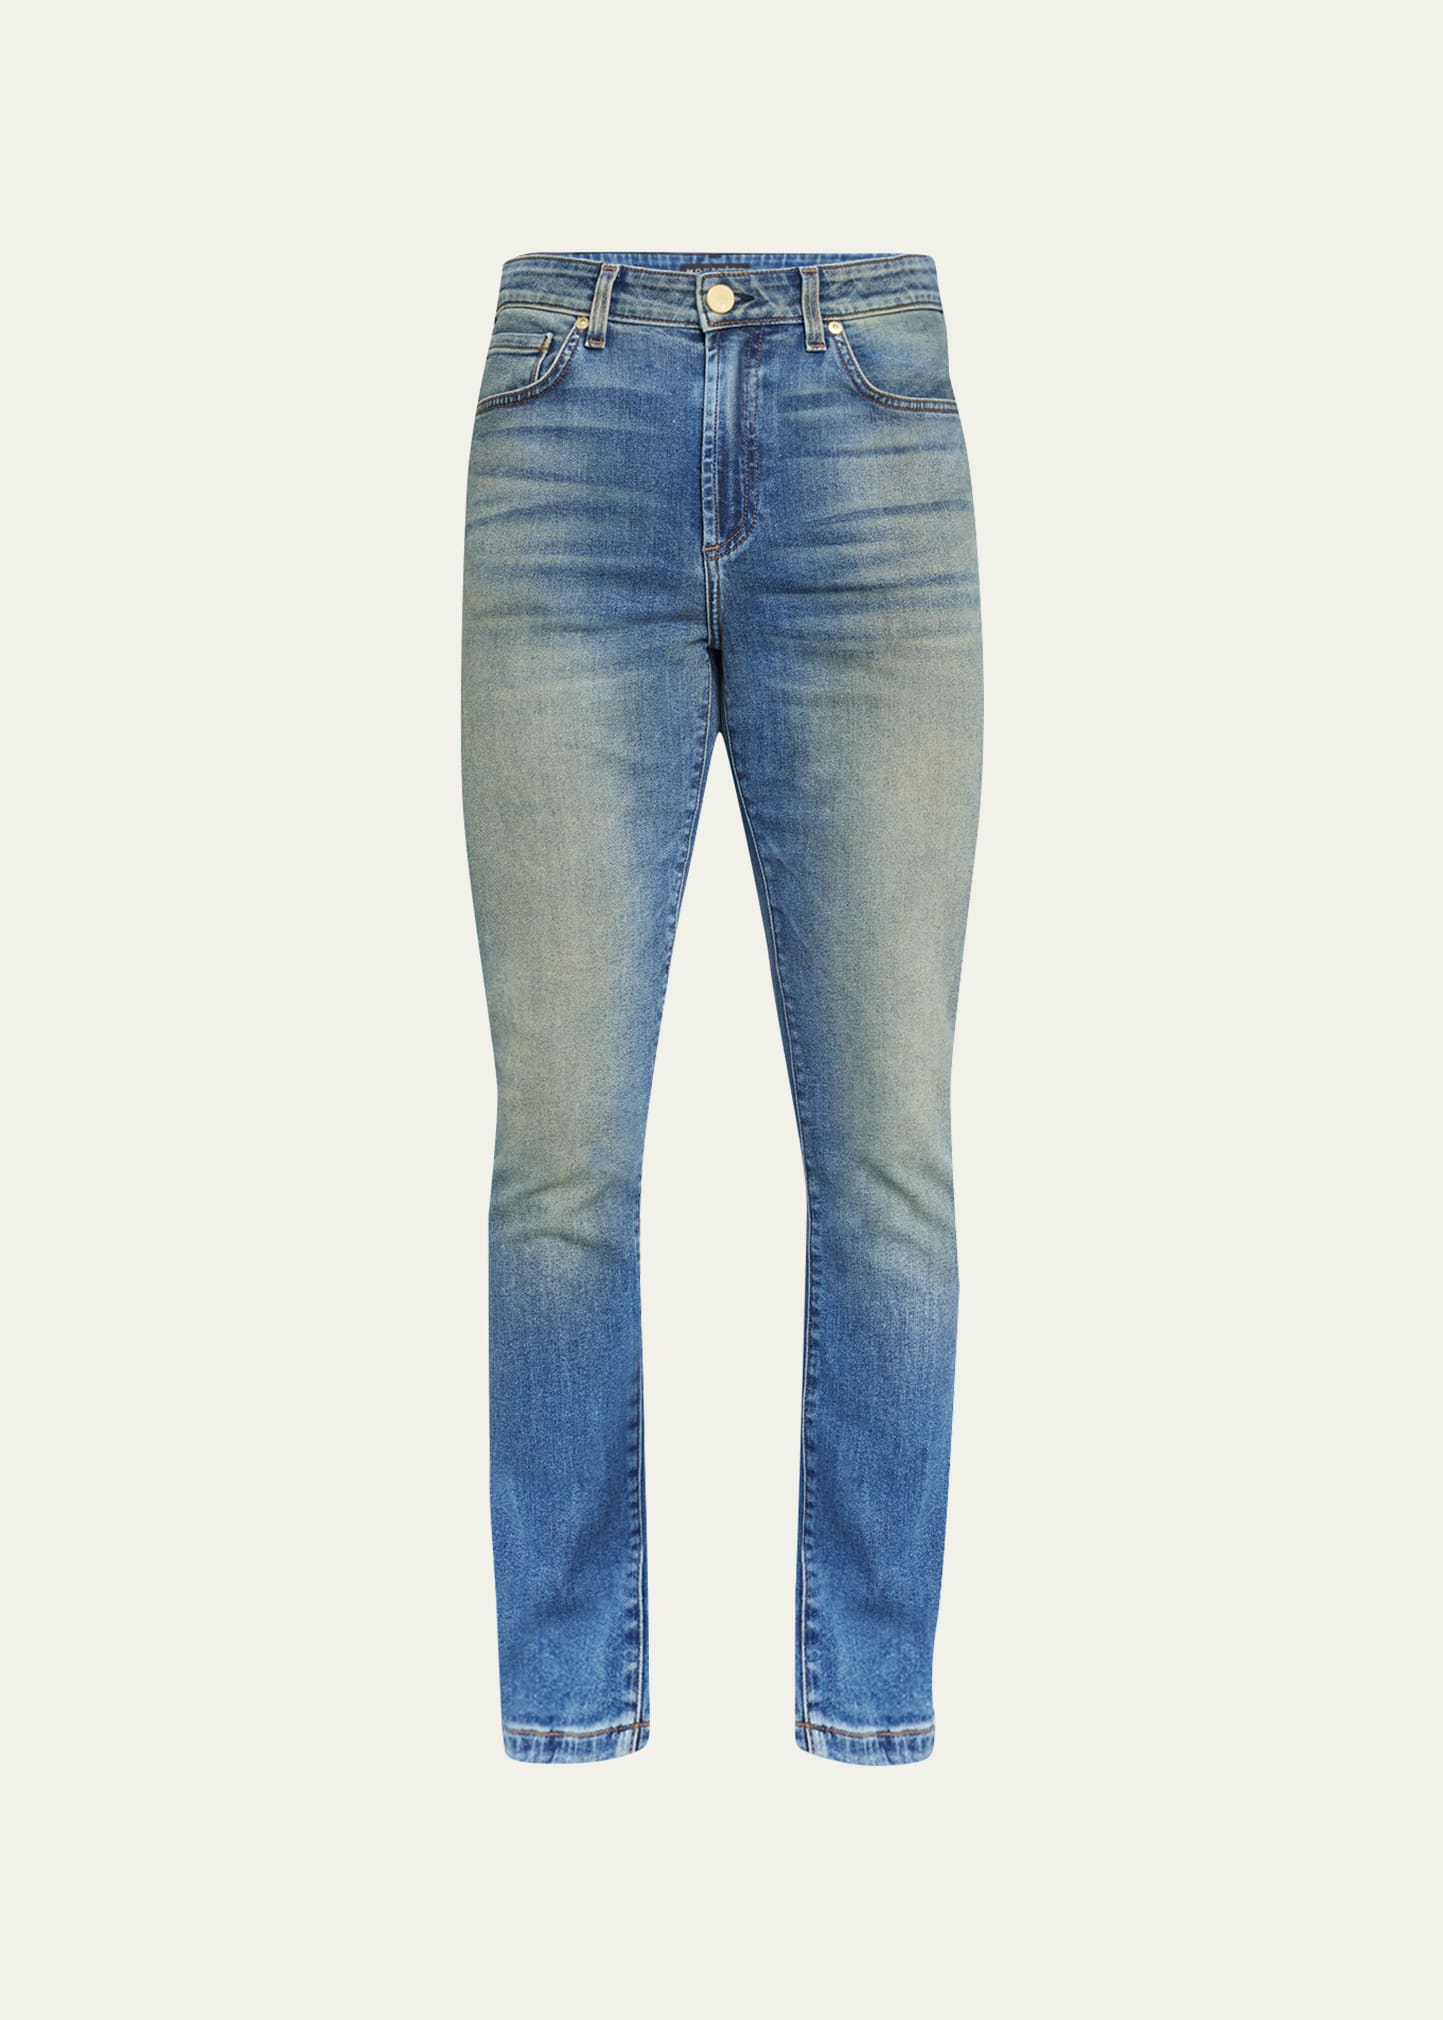 Monfrere Men's Greyson Skinny Zip-cuff Jeans In Dark Vintage